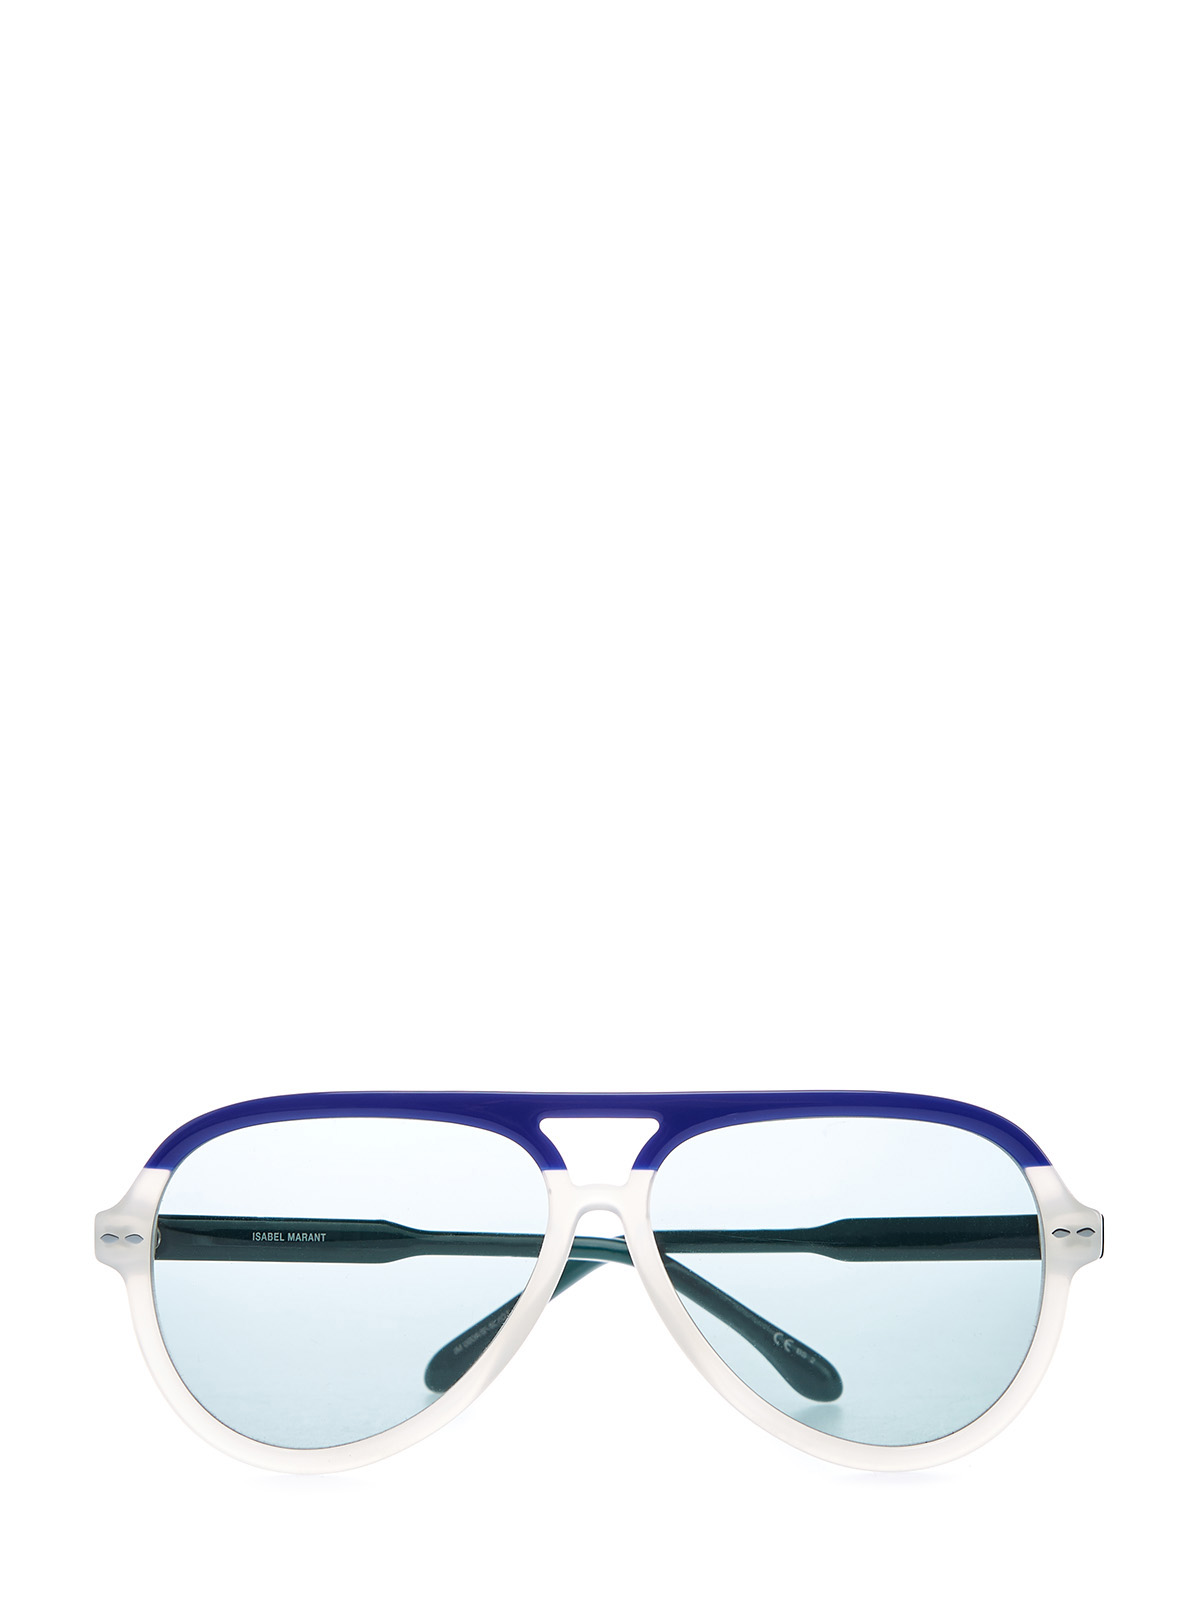 Очки-авиаторы из легкого ацетата в стиле colorblock Isabel Marant(sunglasses), цвет мульти